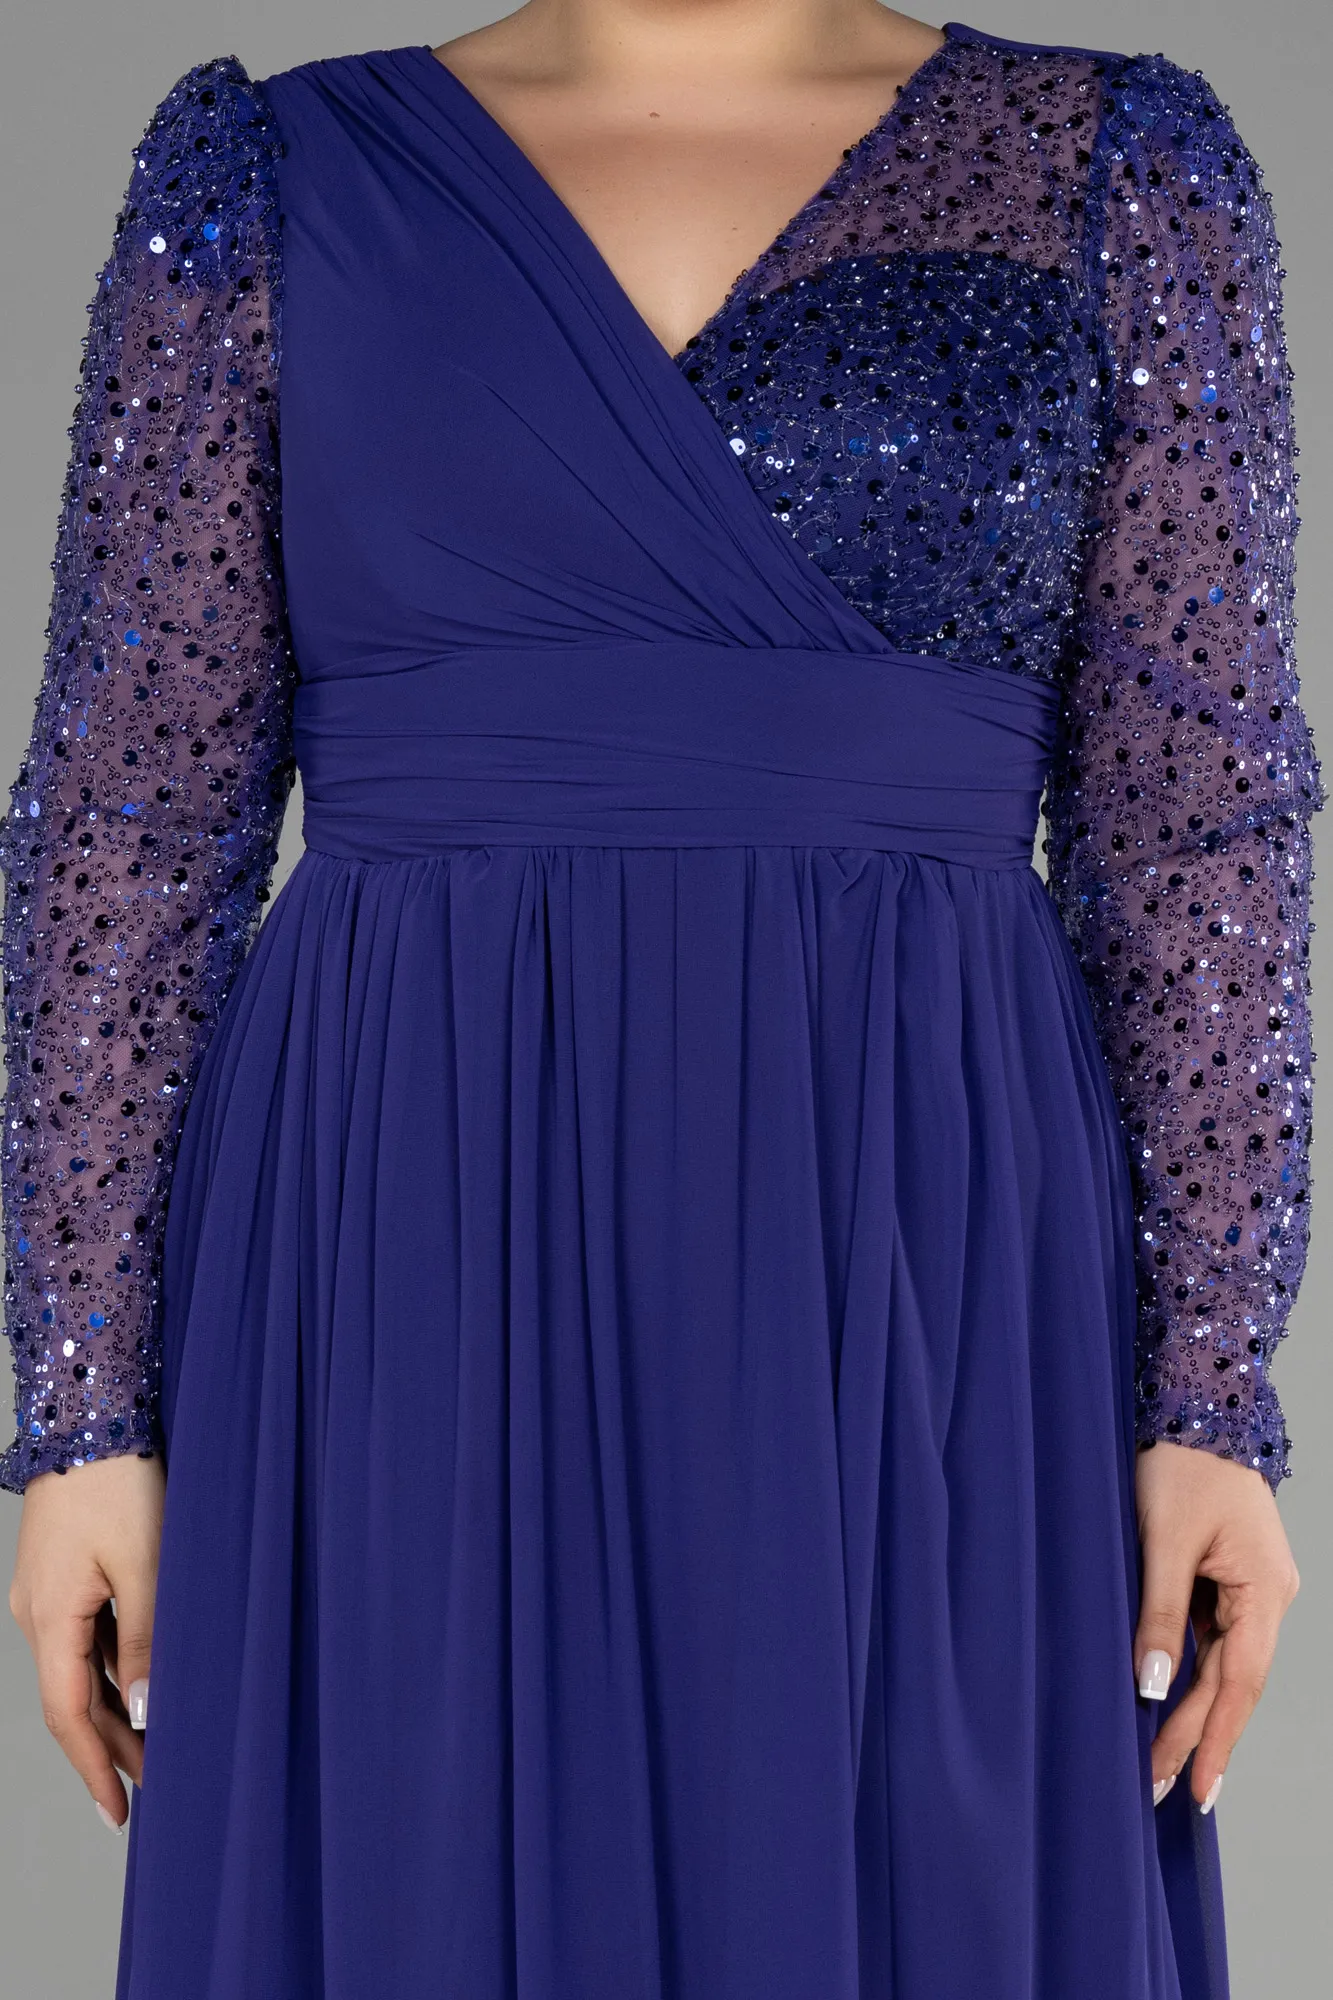 Purple-Long Chiffon Plus Size Evening Dress ABU3264